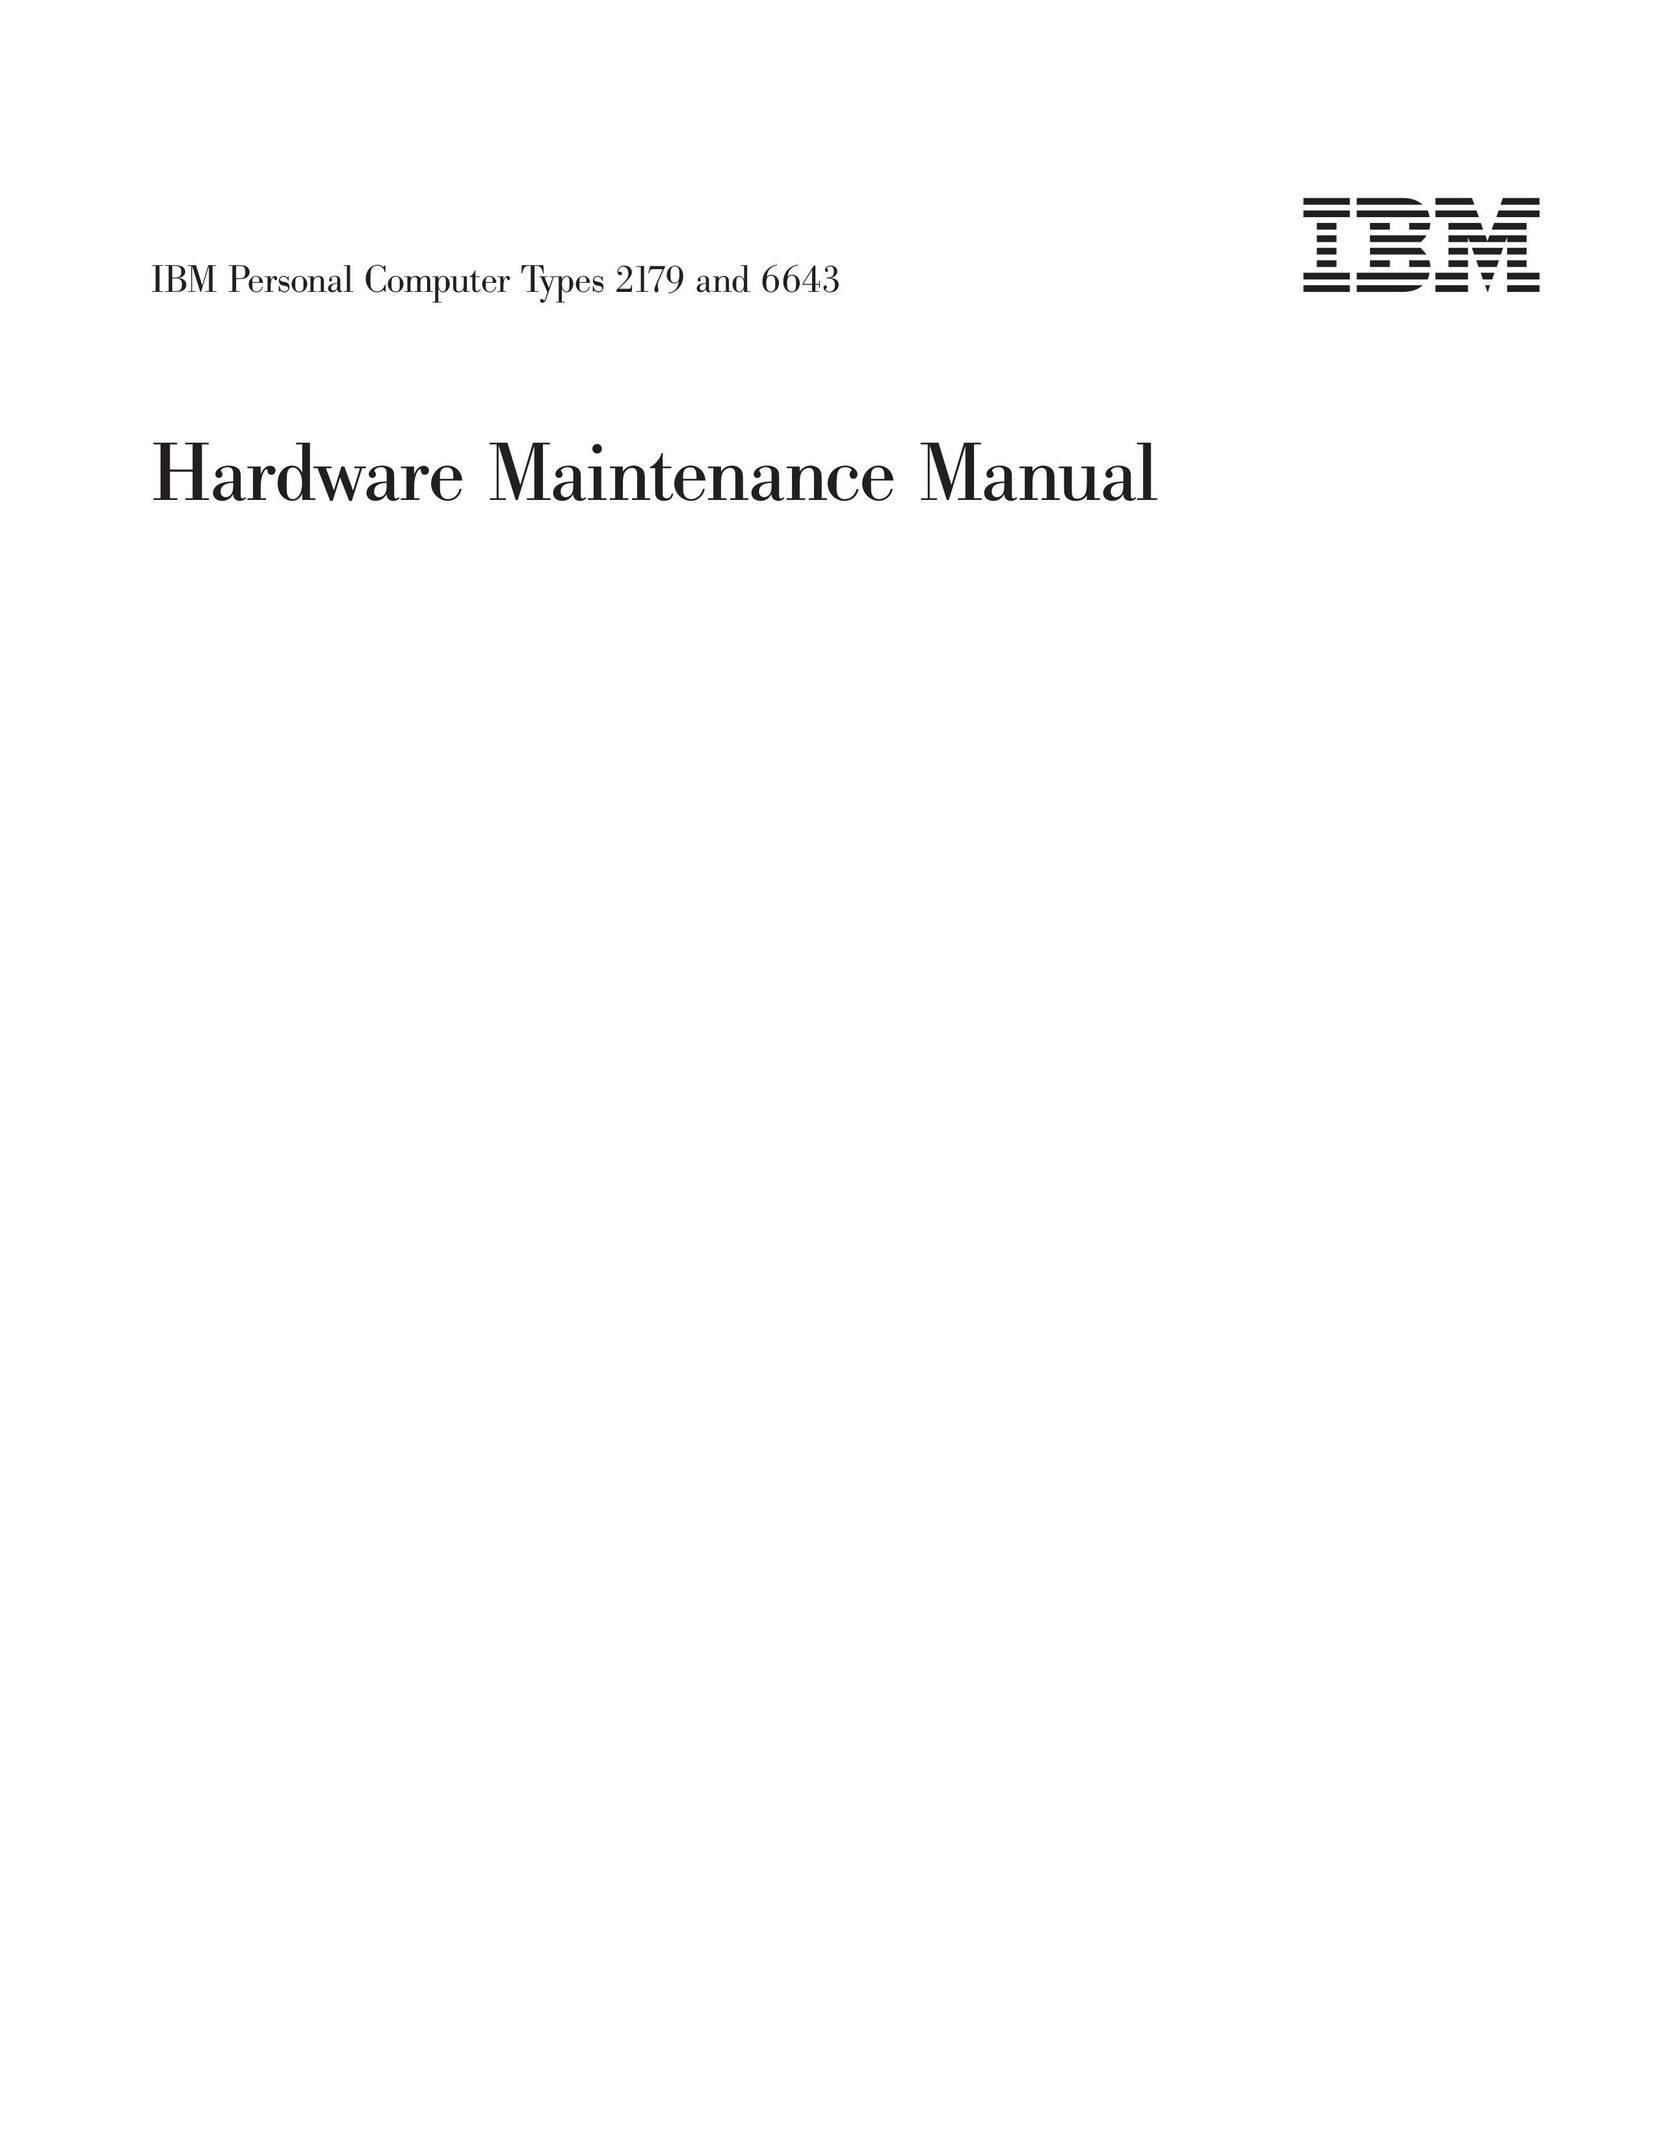 IBM 2179 Personal Computer User Manual